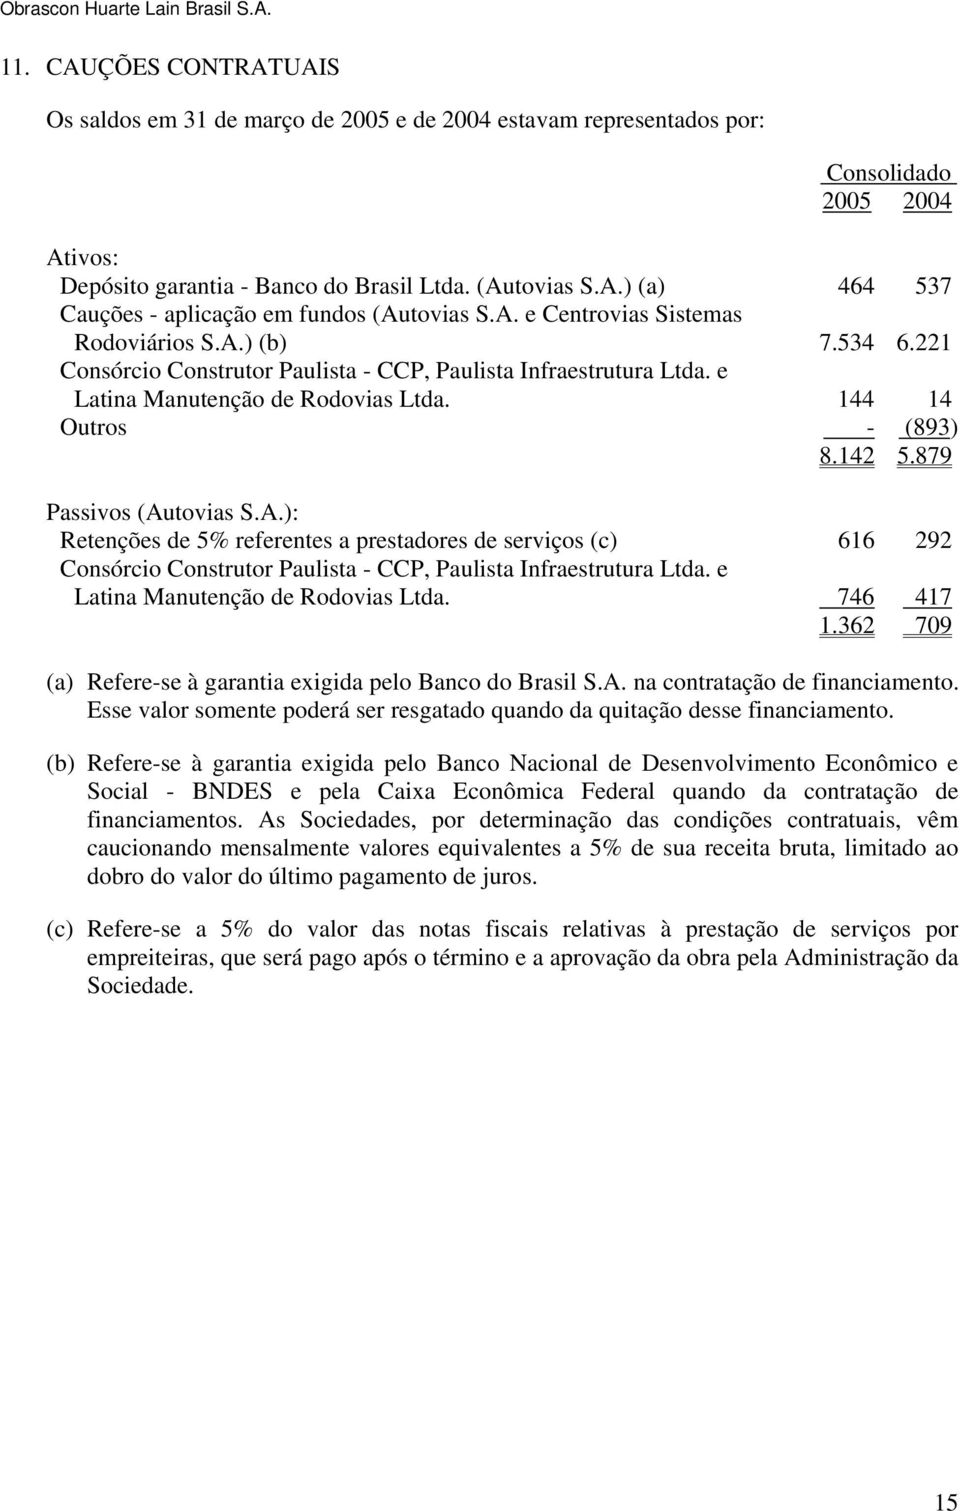 879 Passivos (Autovias S.A.): Retenções de 5% referentes a prestadores de serviços (c) 616 292 Consórcio Construtor Paulista - CCP, Paulista Infraestrutura Ltda. e Latina Manutenção de Rodovias Ltda.